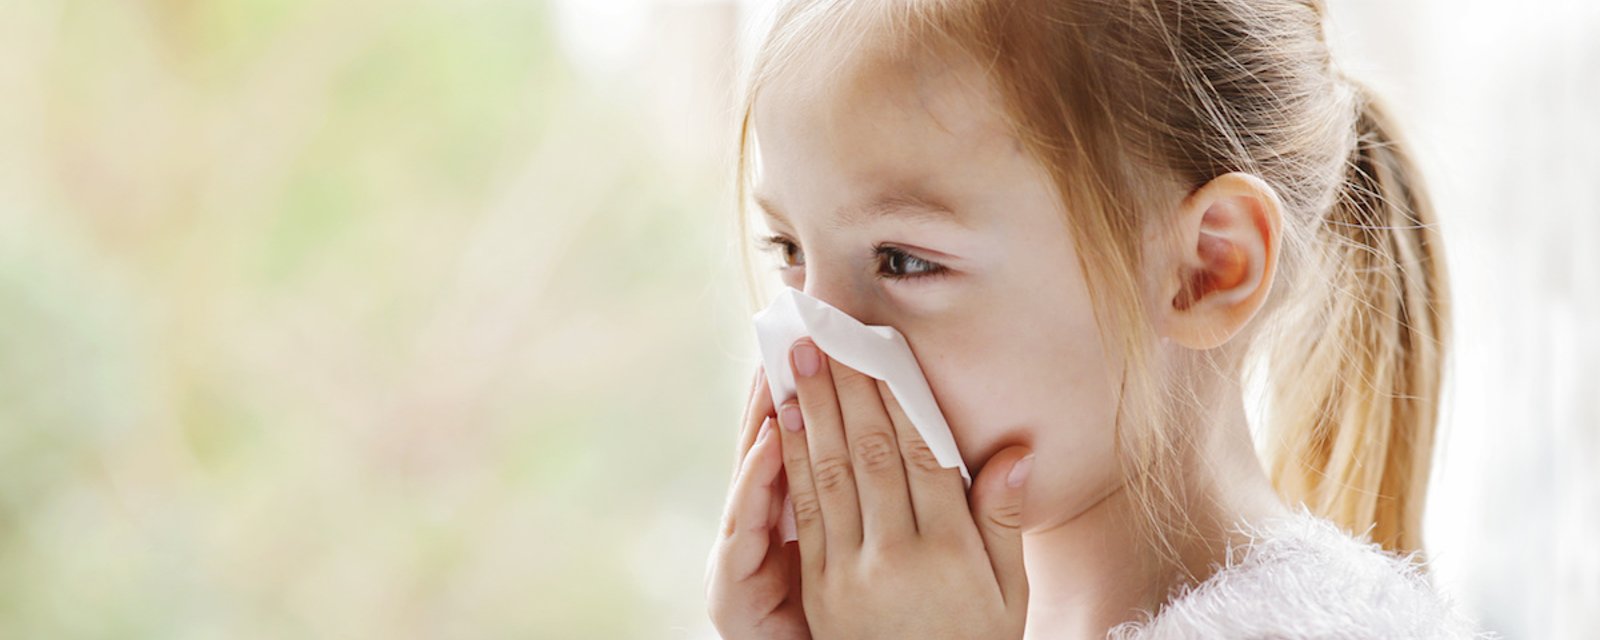 En cette époque de COVID-19, que faire si un enfant a le rhume?